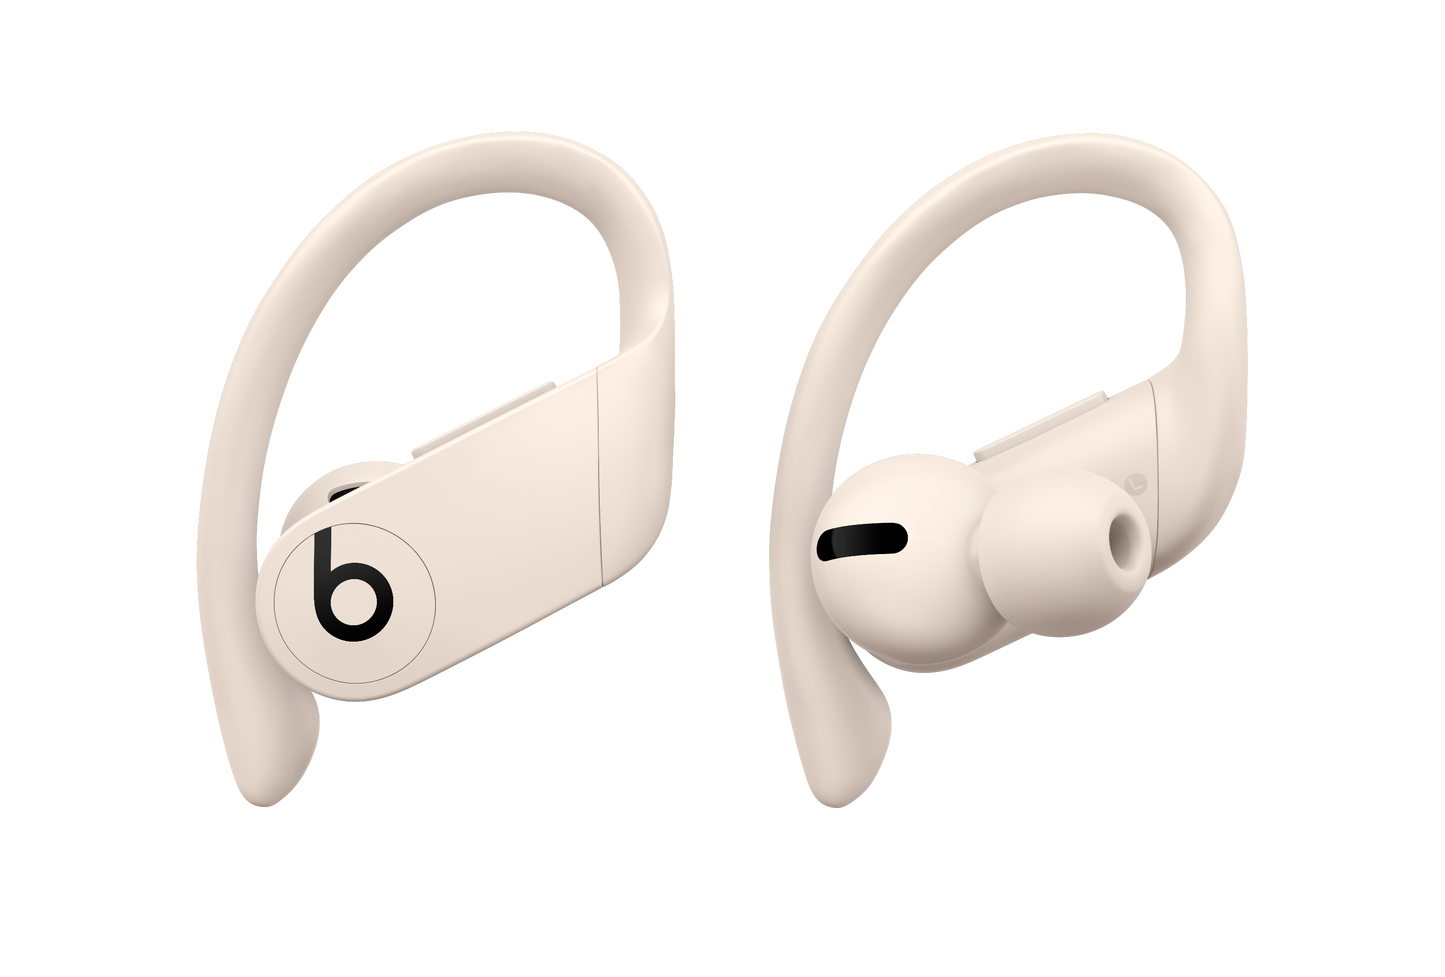 Powerbeats Pro - True Wireless Earbuds - Ivory